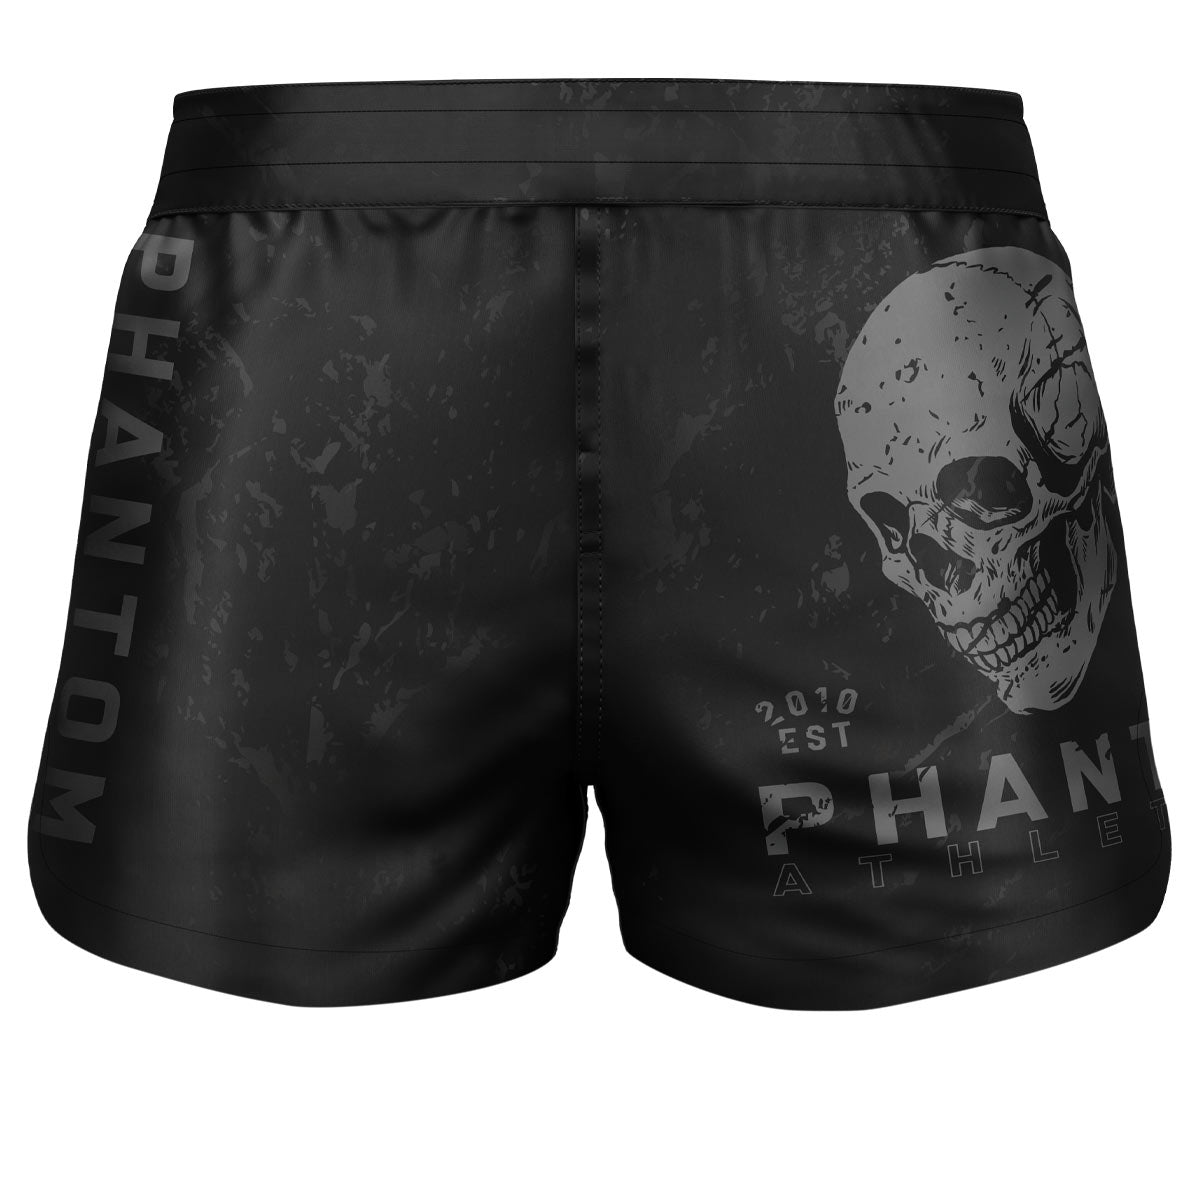 Бойни шорти Phantom SKULL. Идеалните бойни шорти за вашите бойни изкуства. С дизайн на череп. Перфектен за MMA, муай тай, кикбокс, борба и граплинг.